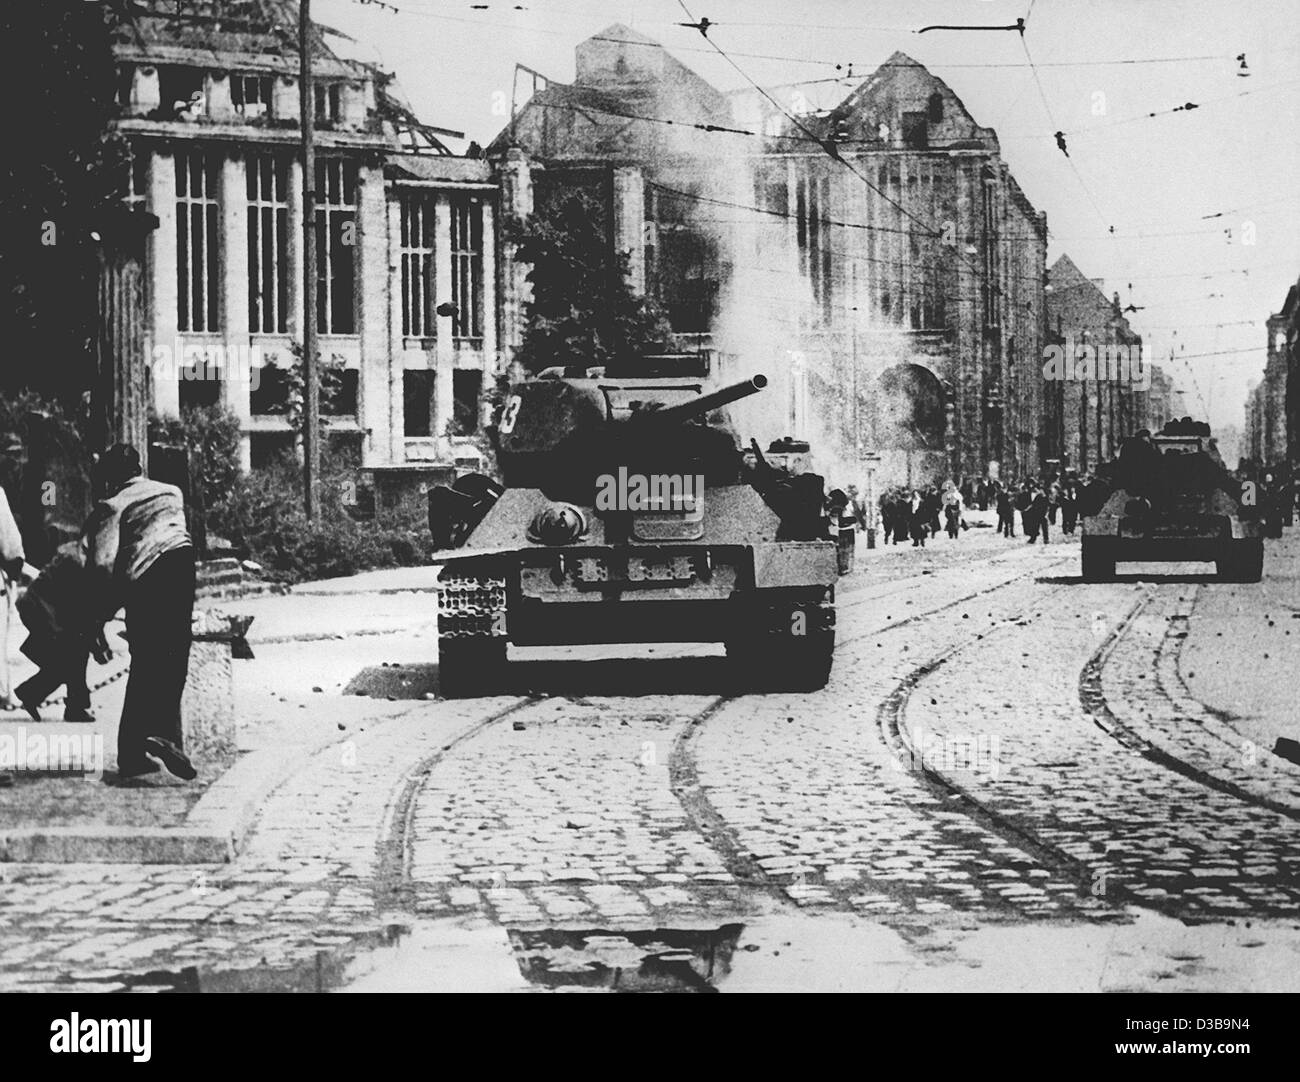 (Dpa-Dateien) - Demonstranten werfen Steinen auf sowjetische Panzer während der Aufstände gegen das kommunistische Regime in Ost-Berlin, 17. Juni 1953. Der Aufstand eskalierte bei Streiks und einer Demonstration gegen unzumutbare Produktionsquoten durch sowjetische Panzer und Truppen am 17. Juni abgerissen wurden. Stockfoto